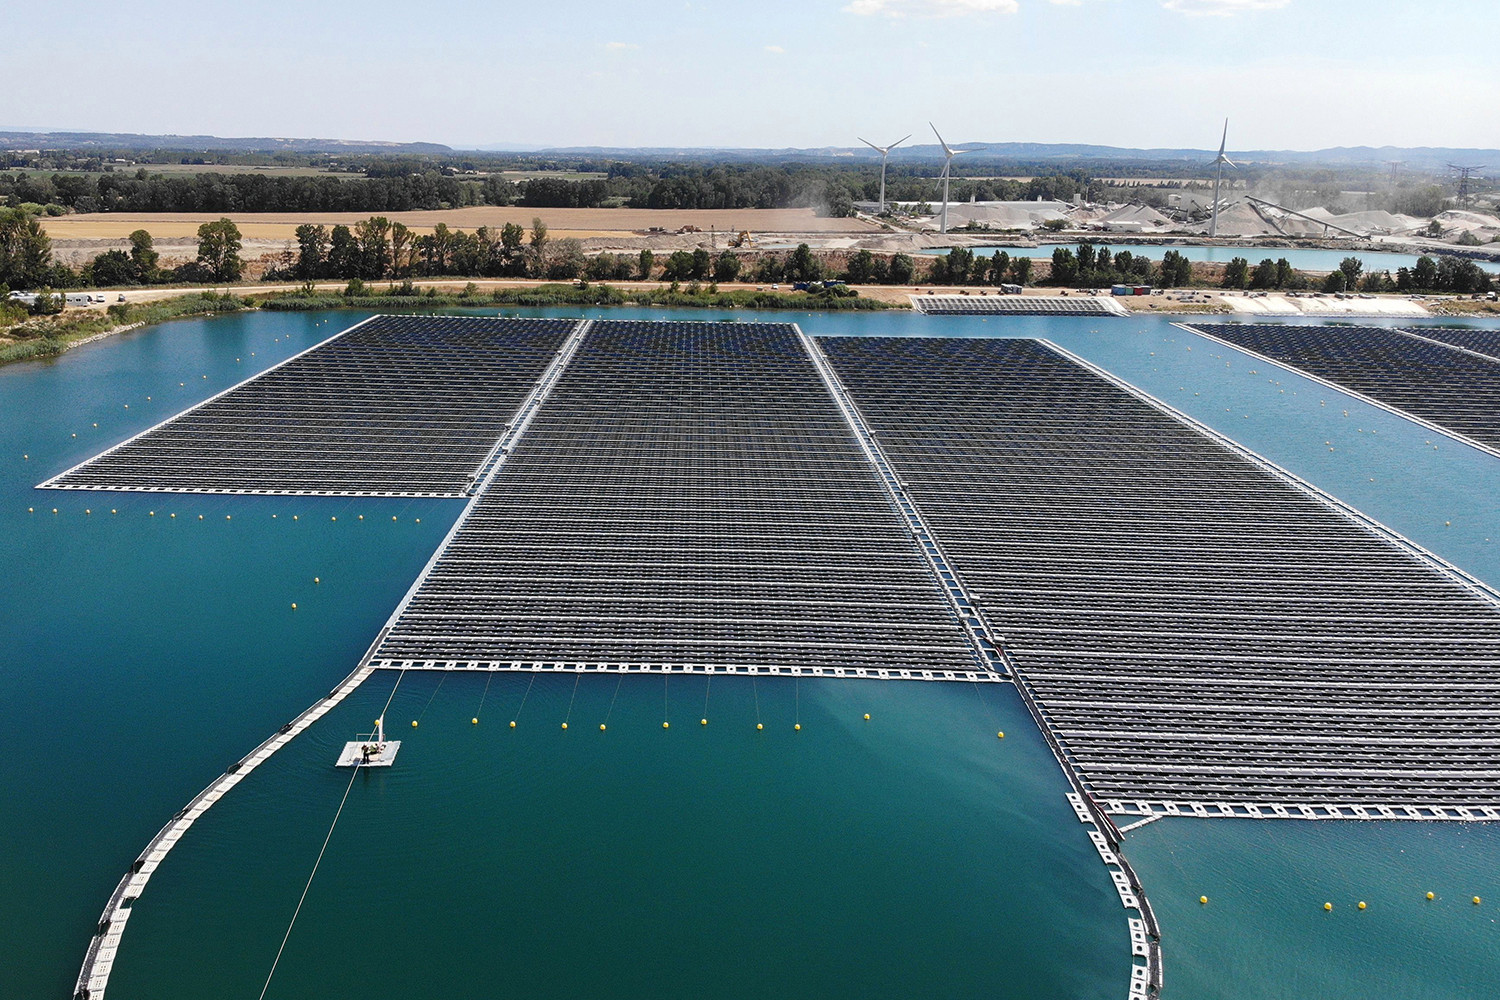   Các tấm pin mặt trời quang điện quét cảnh quan tại một trang trại năng lượng mặt trời nổi ở miền nam nước Pháp vào ngày 30/7.  